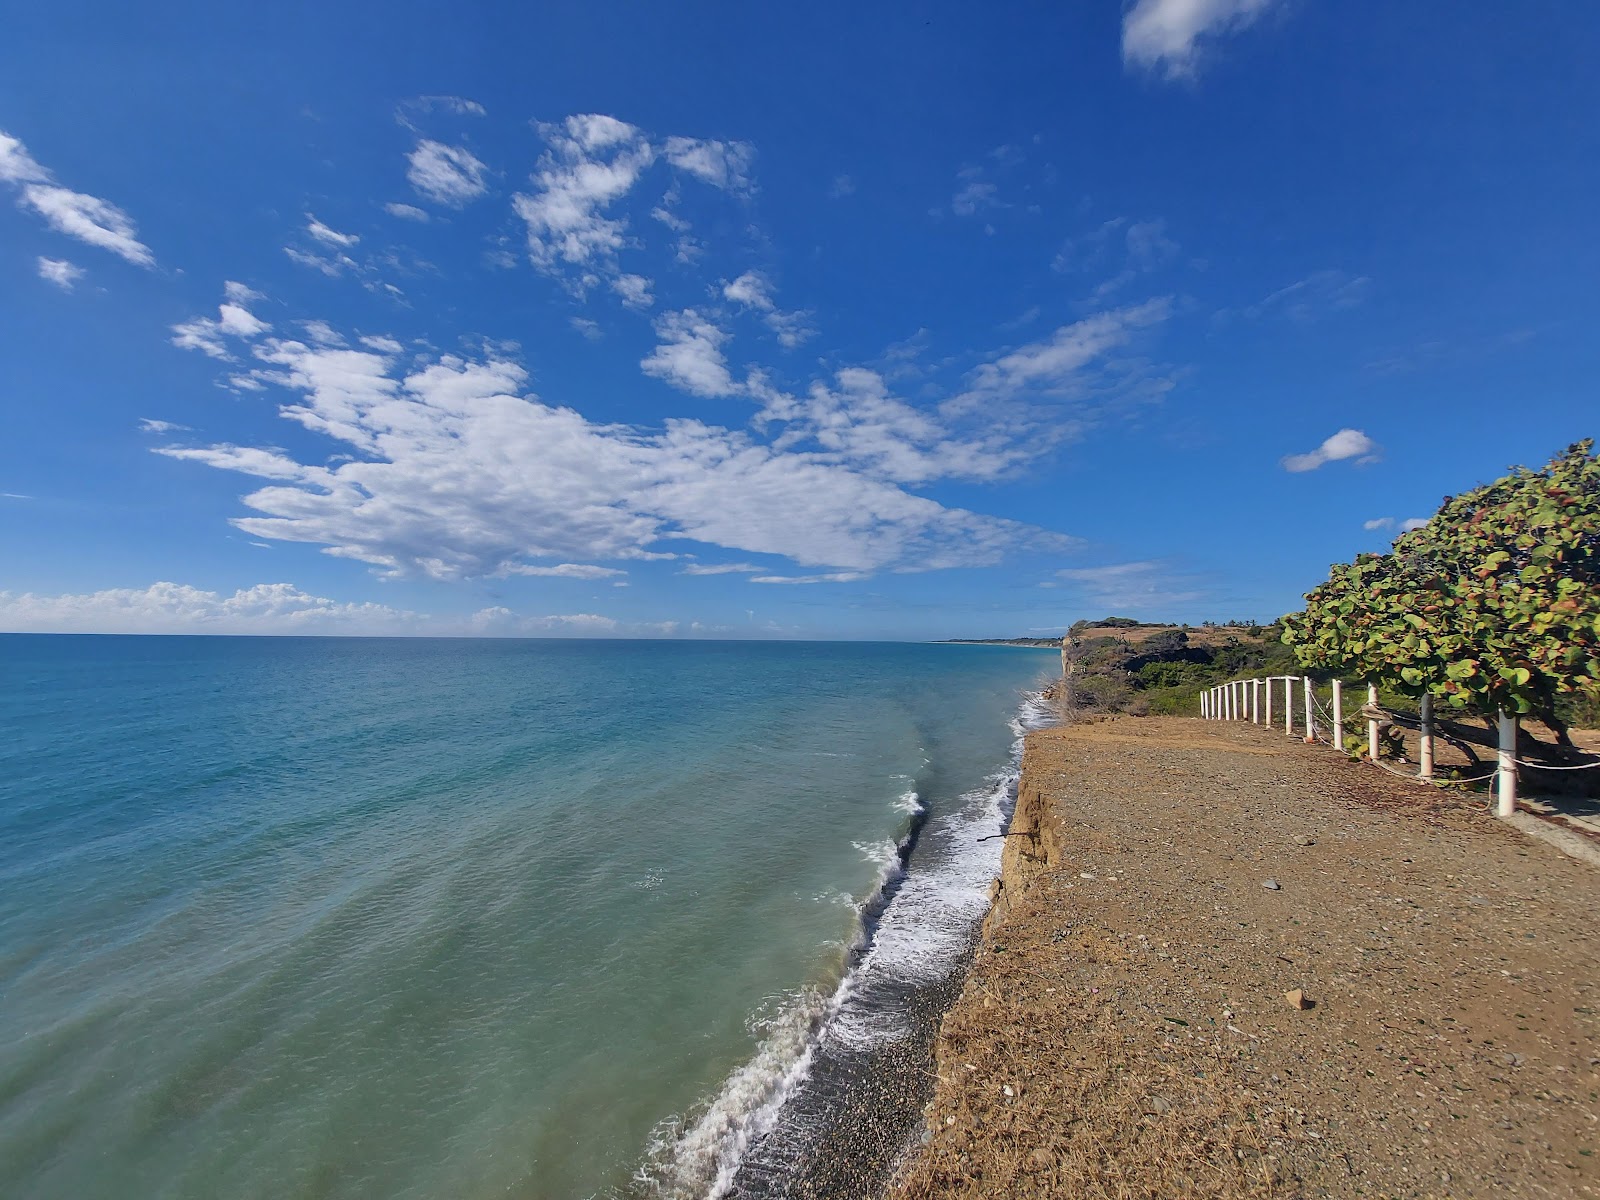 Playa Matanzas'in fotoğrafı gri ince çakıl taş yüzey ile